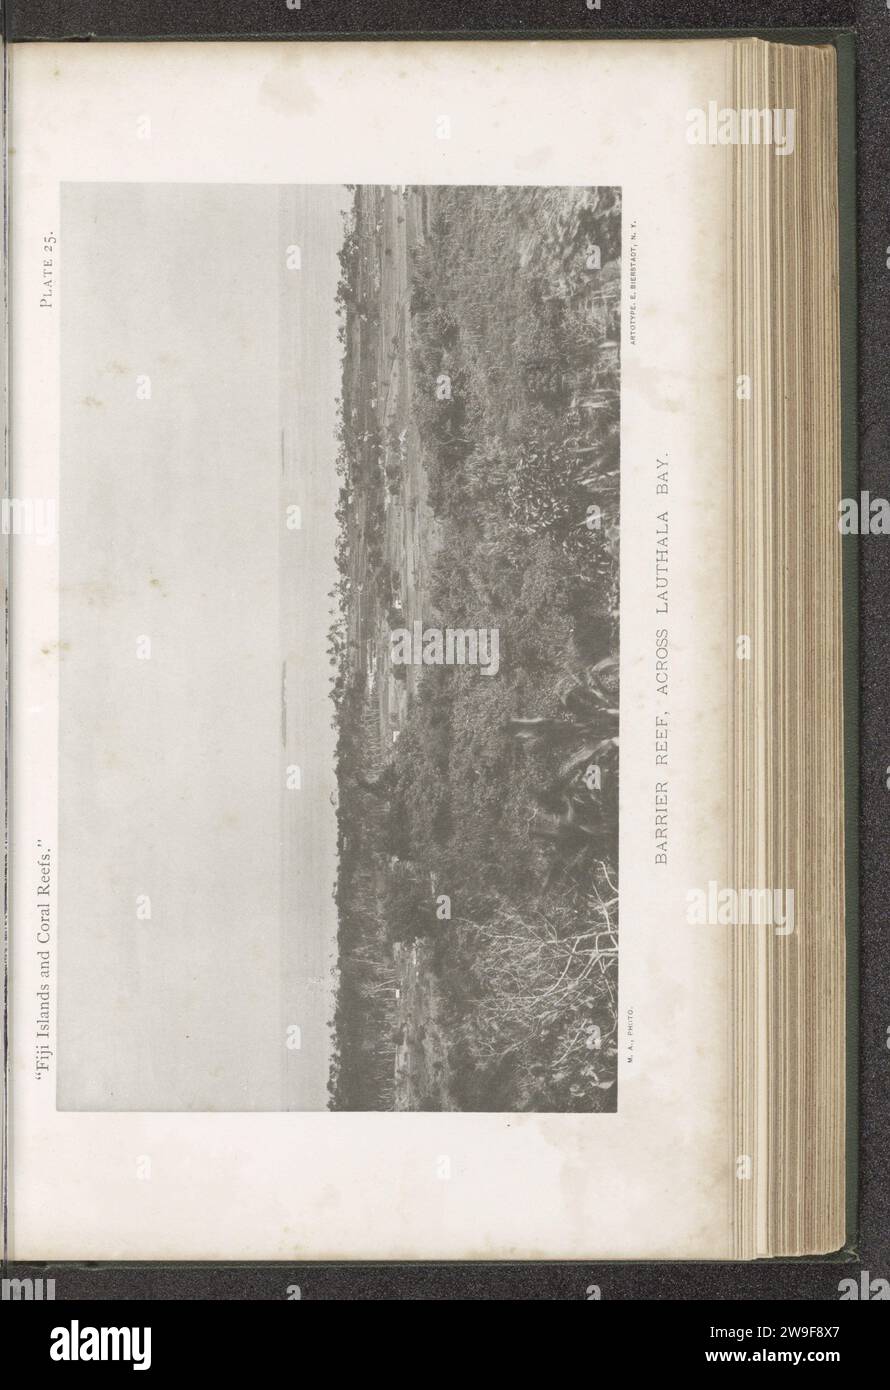 Veduta di una barriera dietro una baia di Laucala, c. 1885 - in o prima del 1899 stampa fotomeccanica Laucalaprinter: New York (città) collotipo di carta golfo, baia. Laucara, barriera corallina Foto Stock